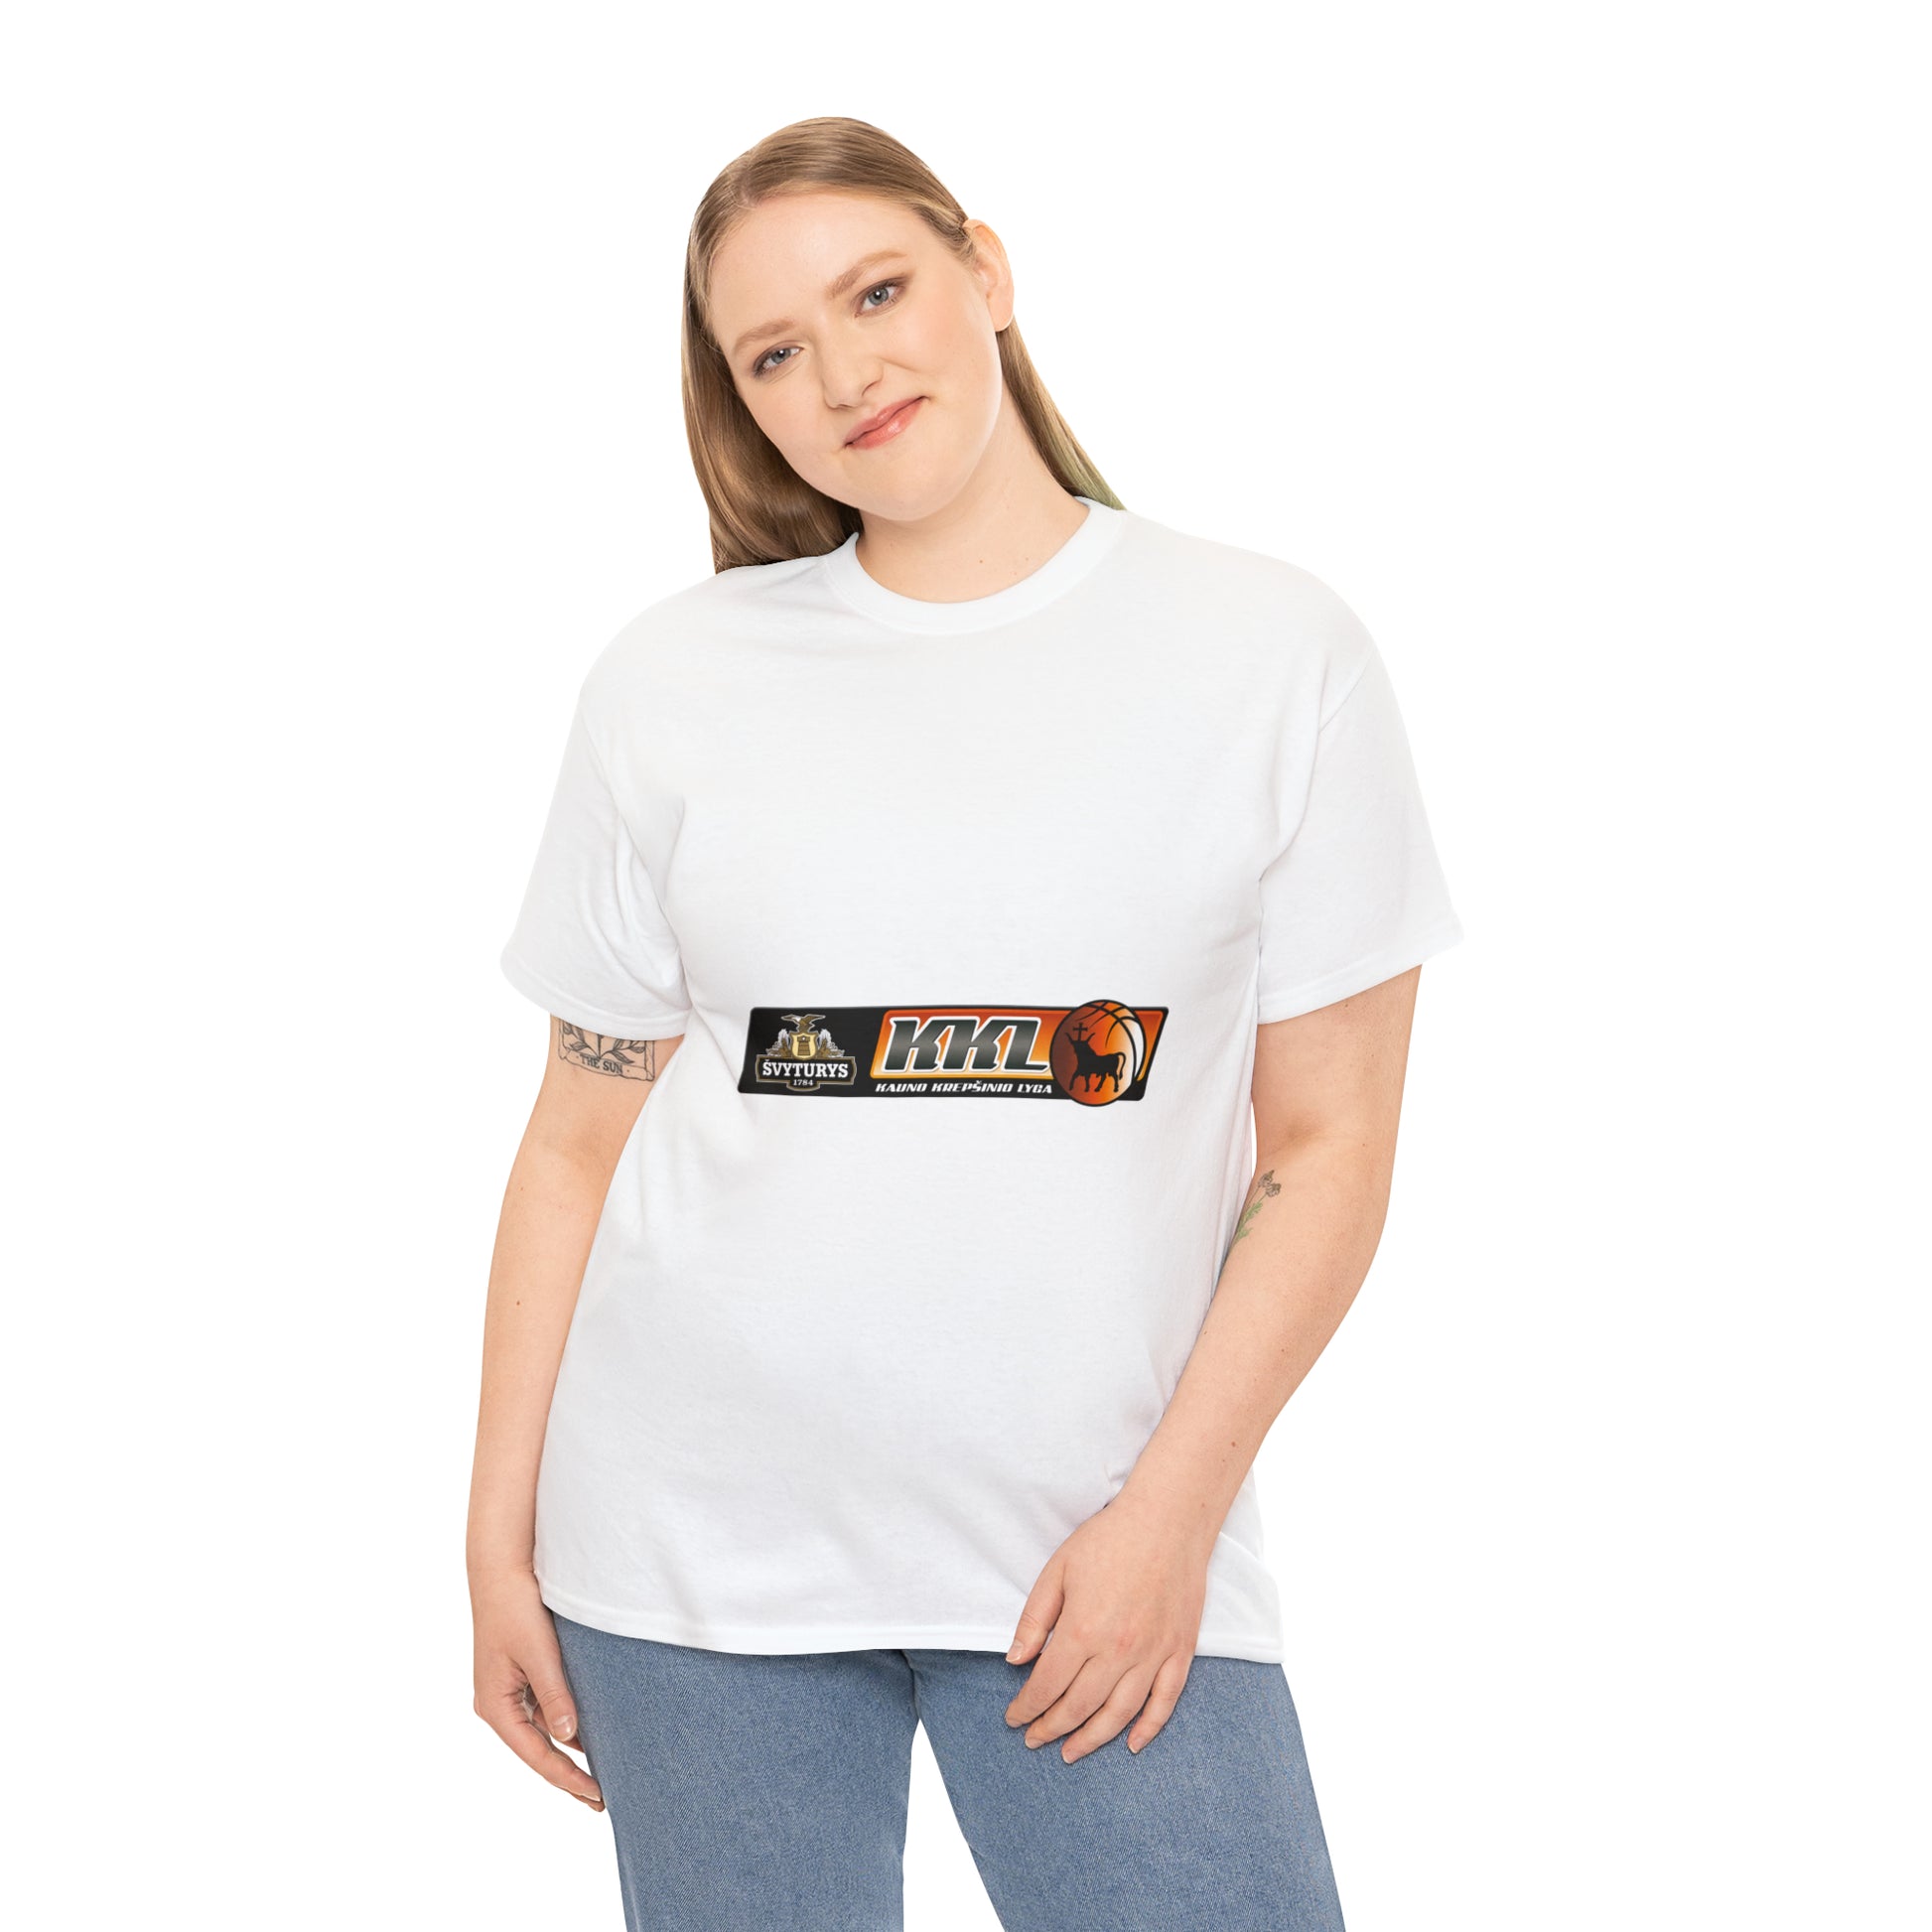 "Švyturio" - Kauno krepšinio lyga Unisex Heavy Cotton T-shirt